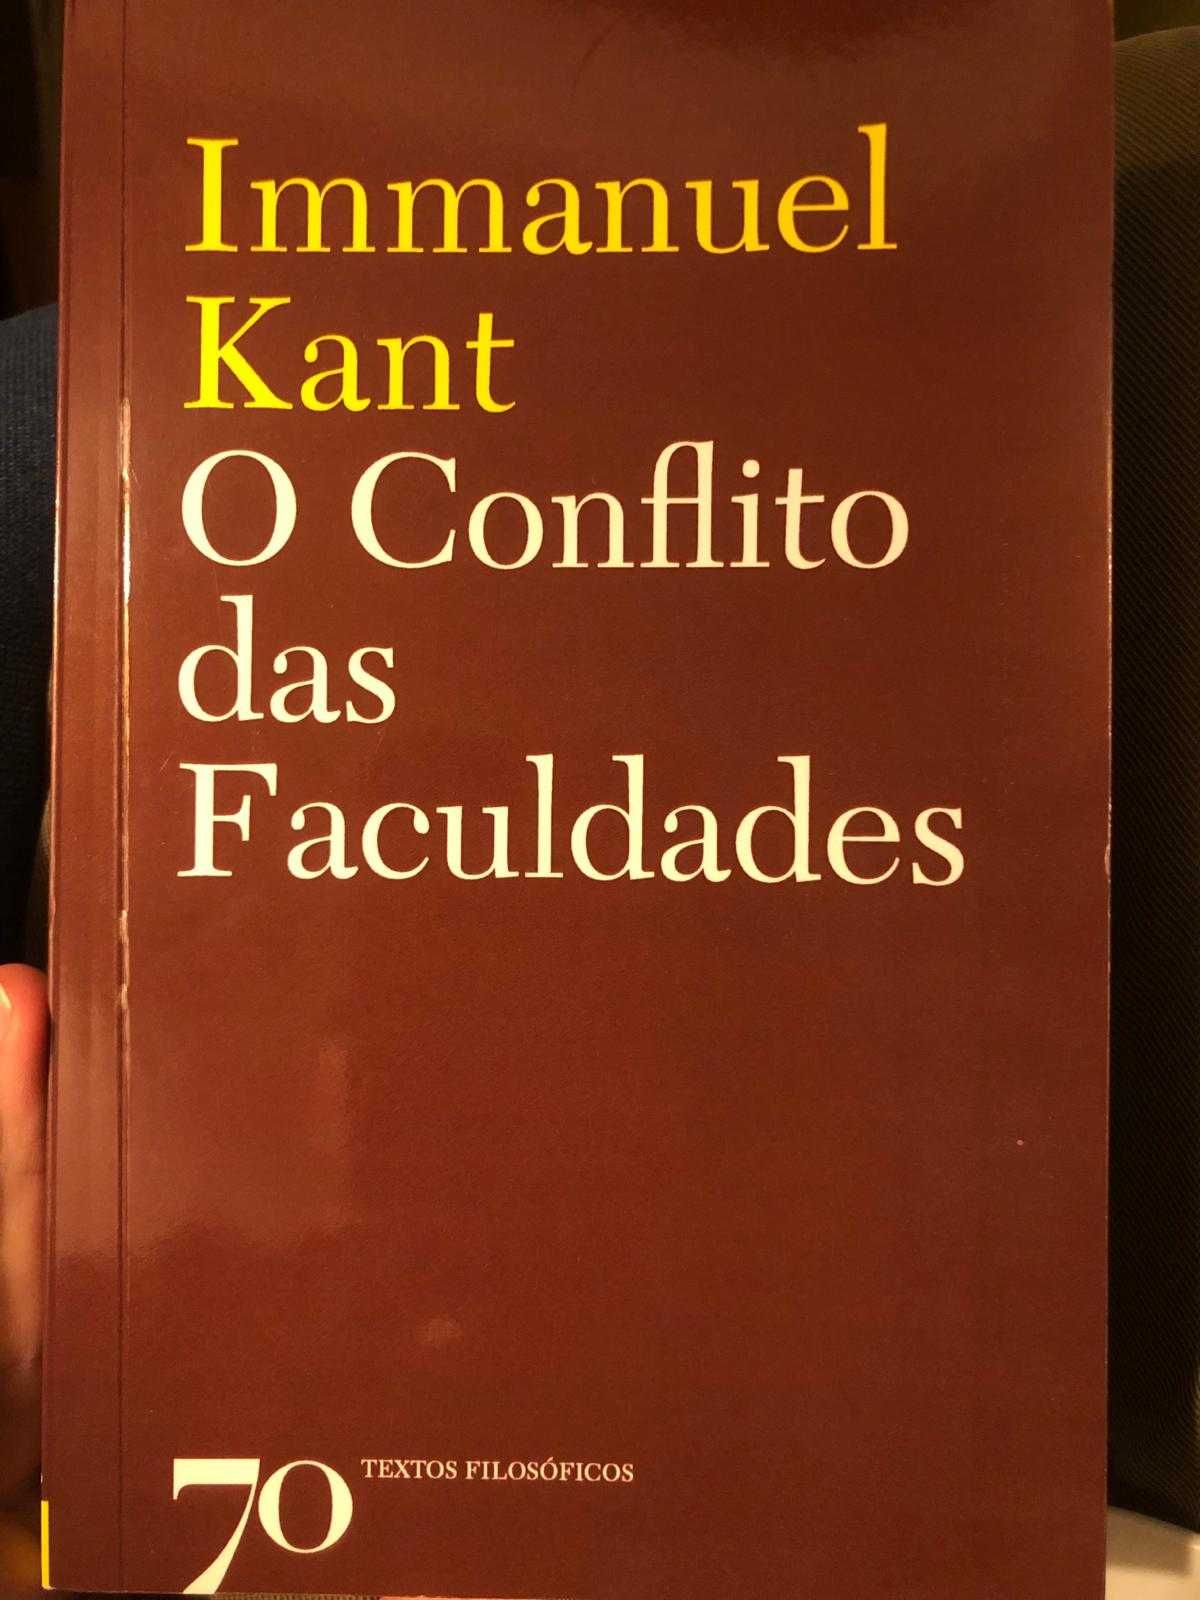 Kant O Conflito das Faculdades